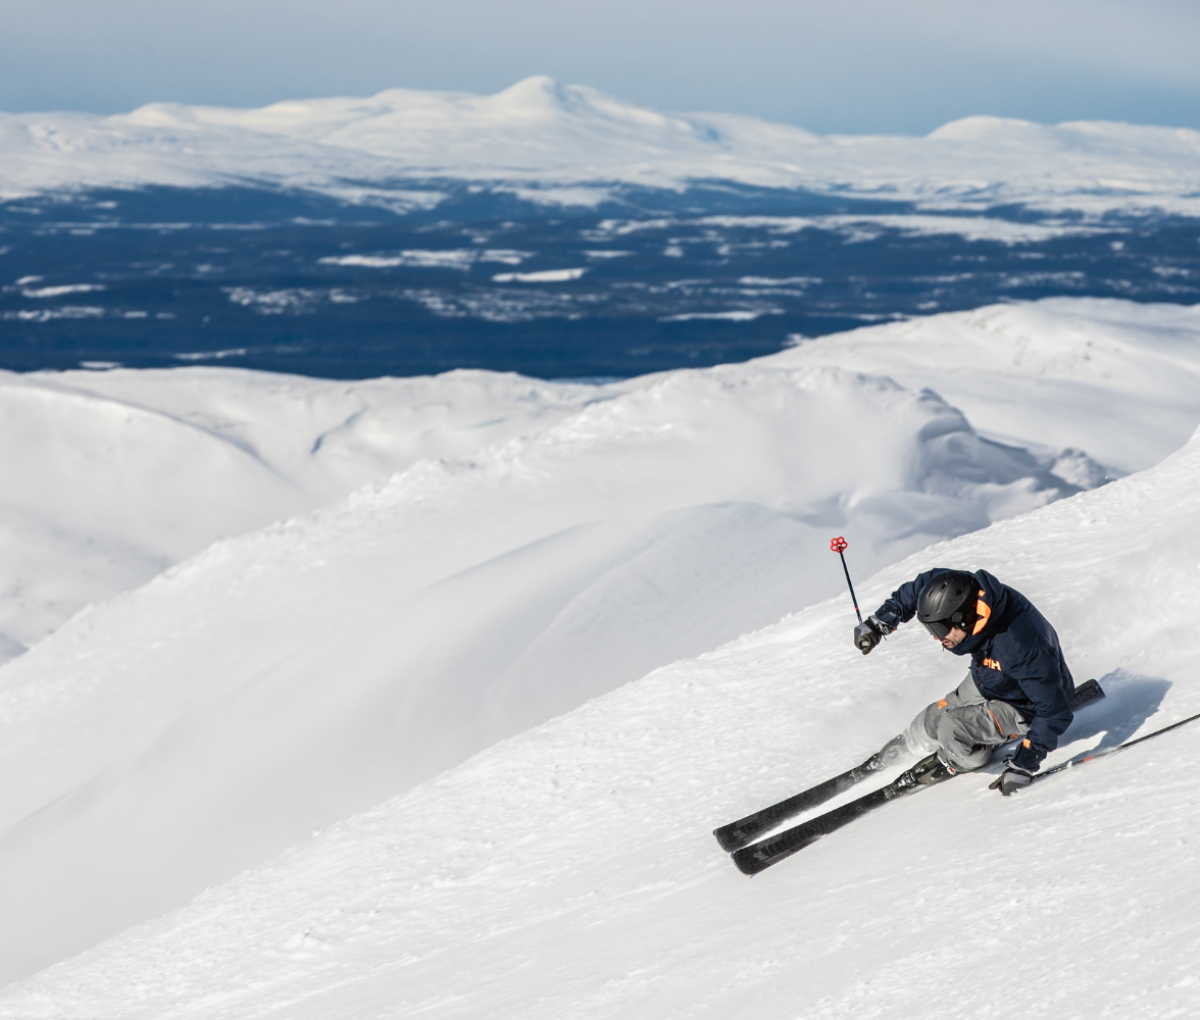 Skiing in Jämtland Härjedalen, Sweden